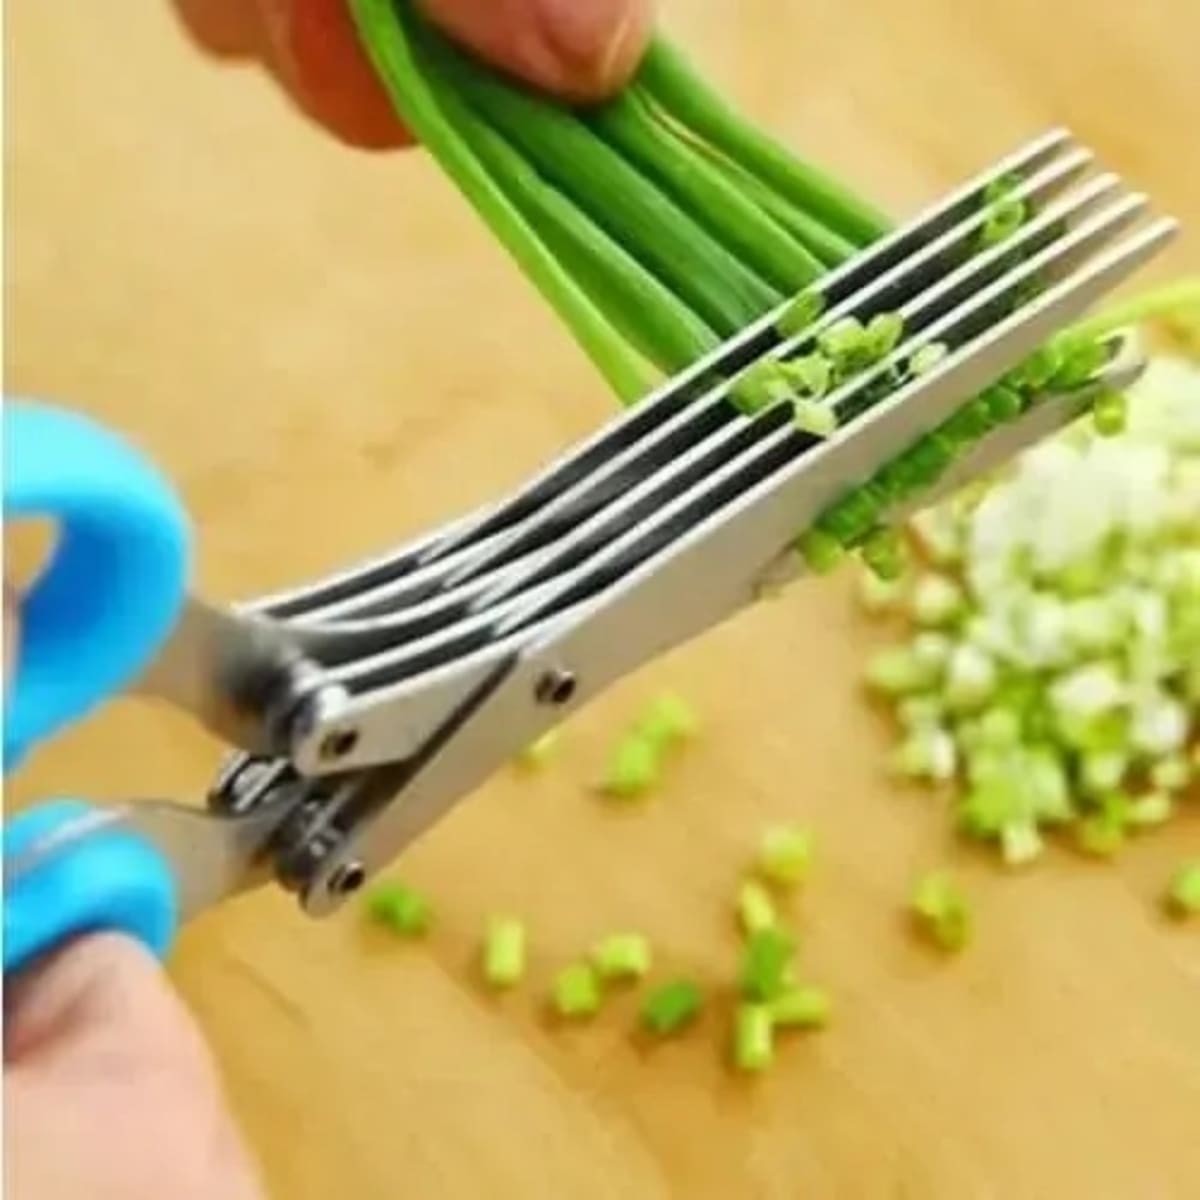 Vegetable Kitchen Scissors - 5 Blades